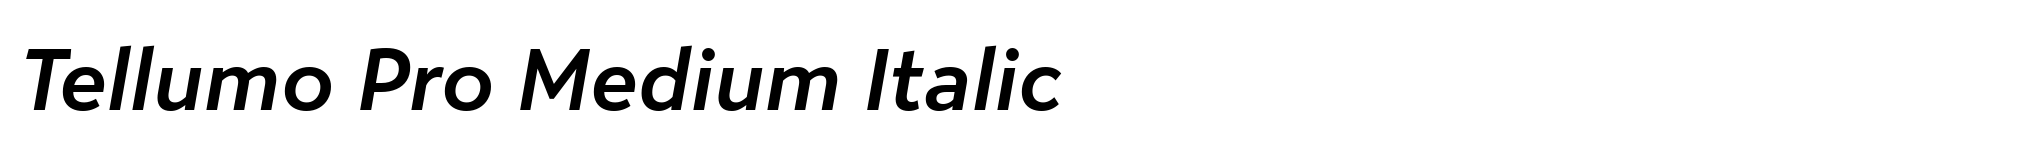 Tellumo Pro Medium Italic image